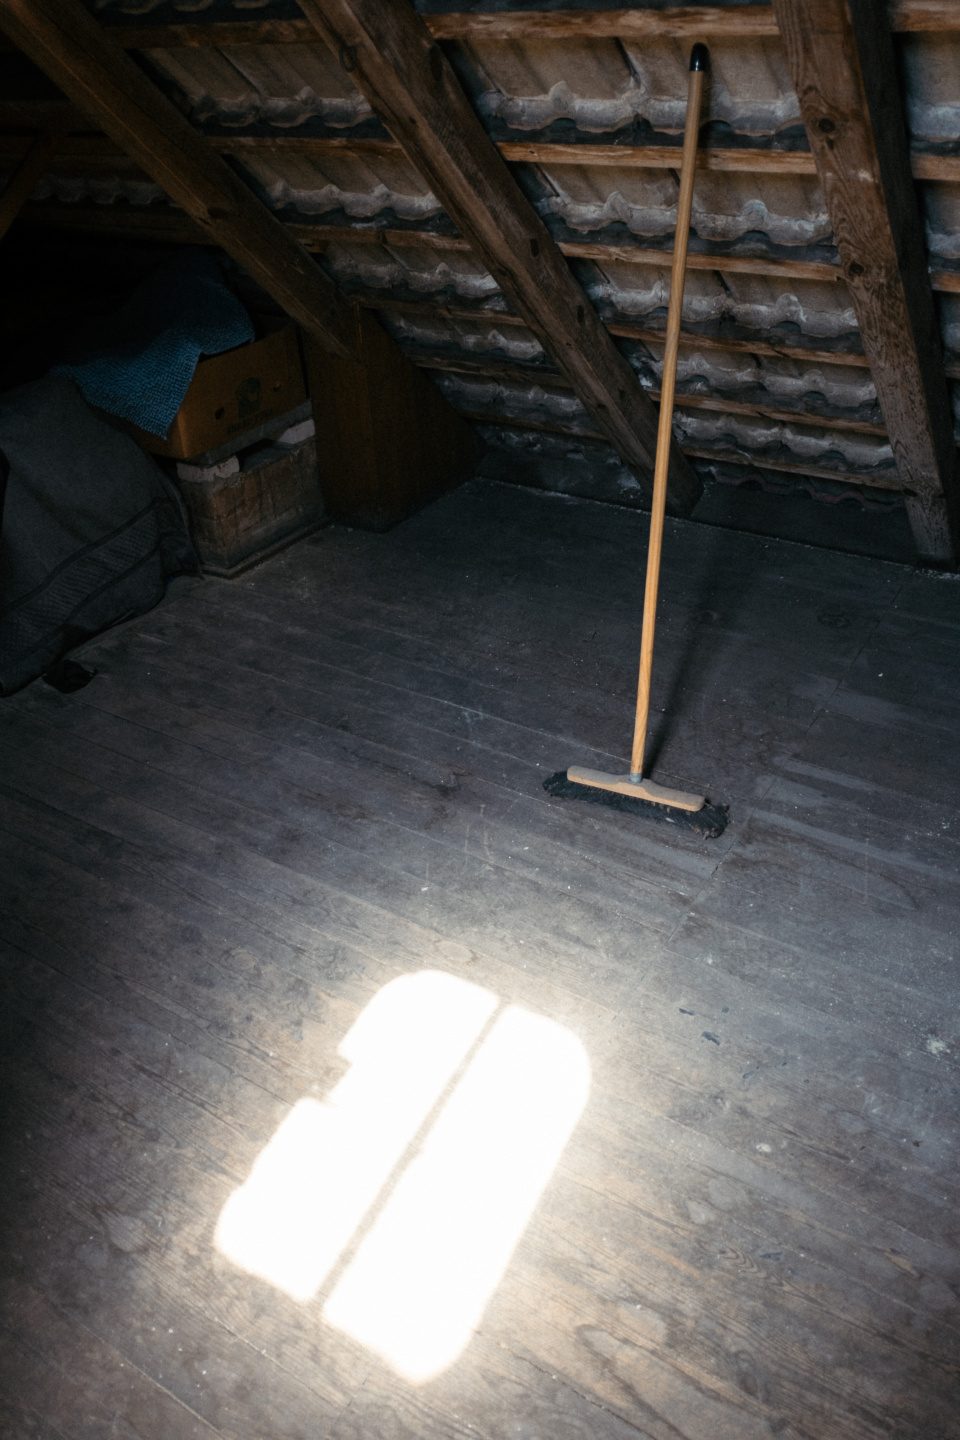 Broom in the attic